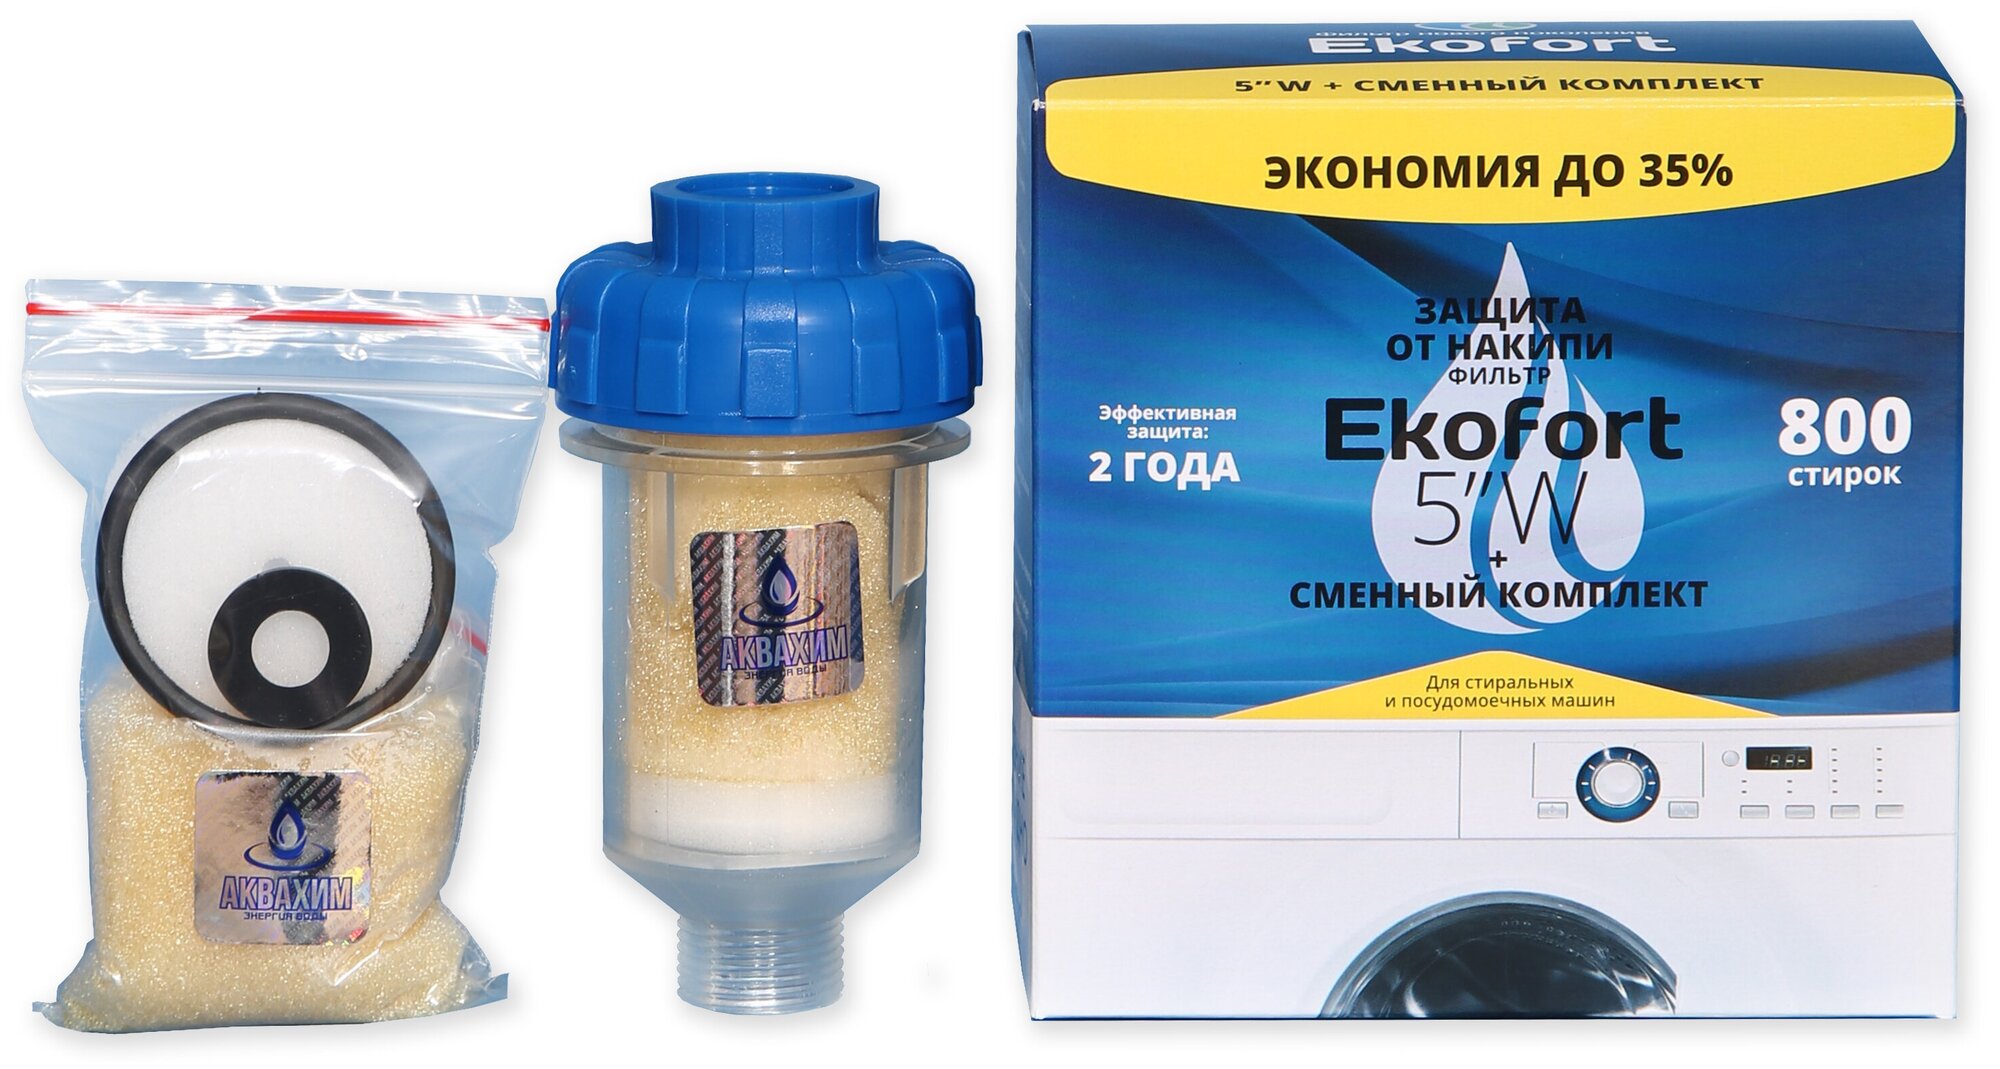 Ekofort 5" W Фильтр для защиты от накипи стиральных машин + сменный комплект